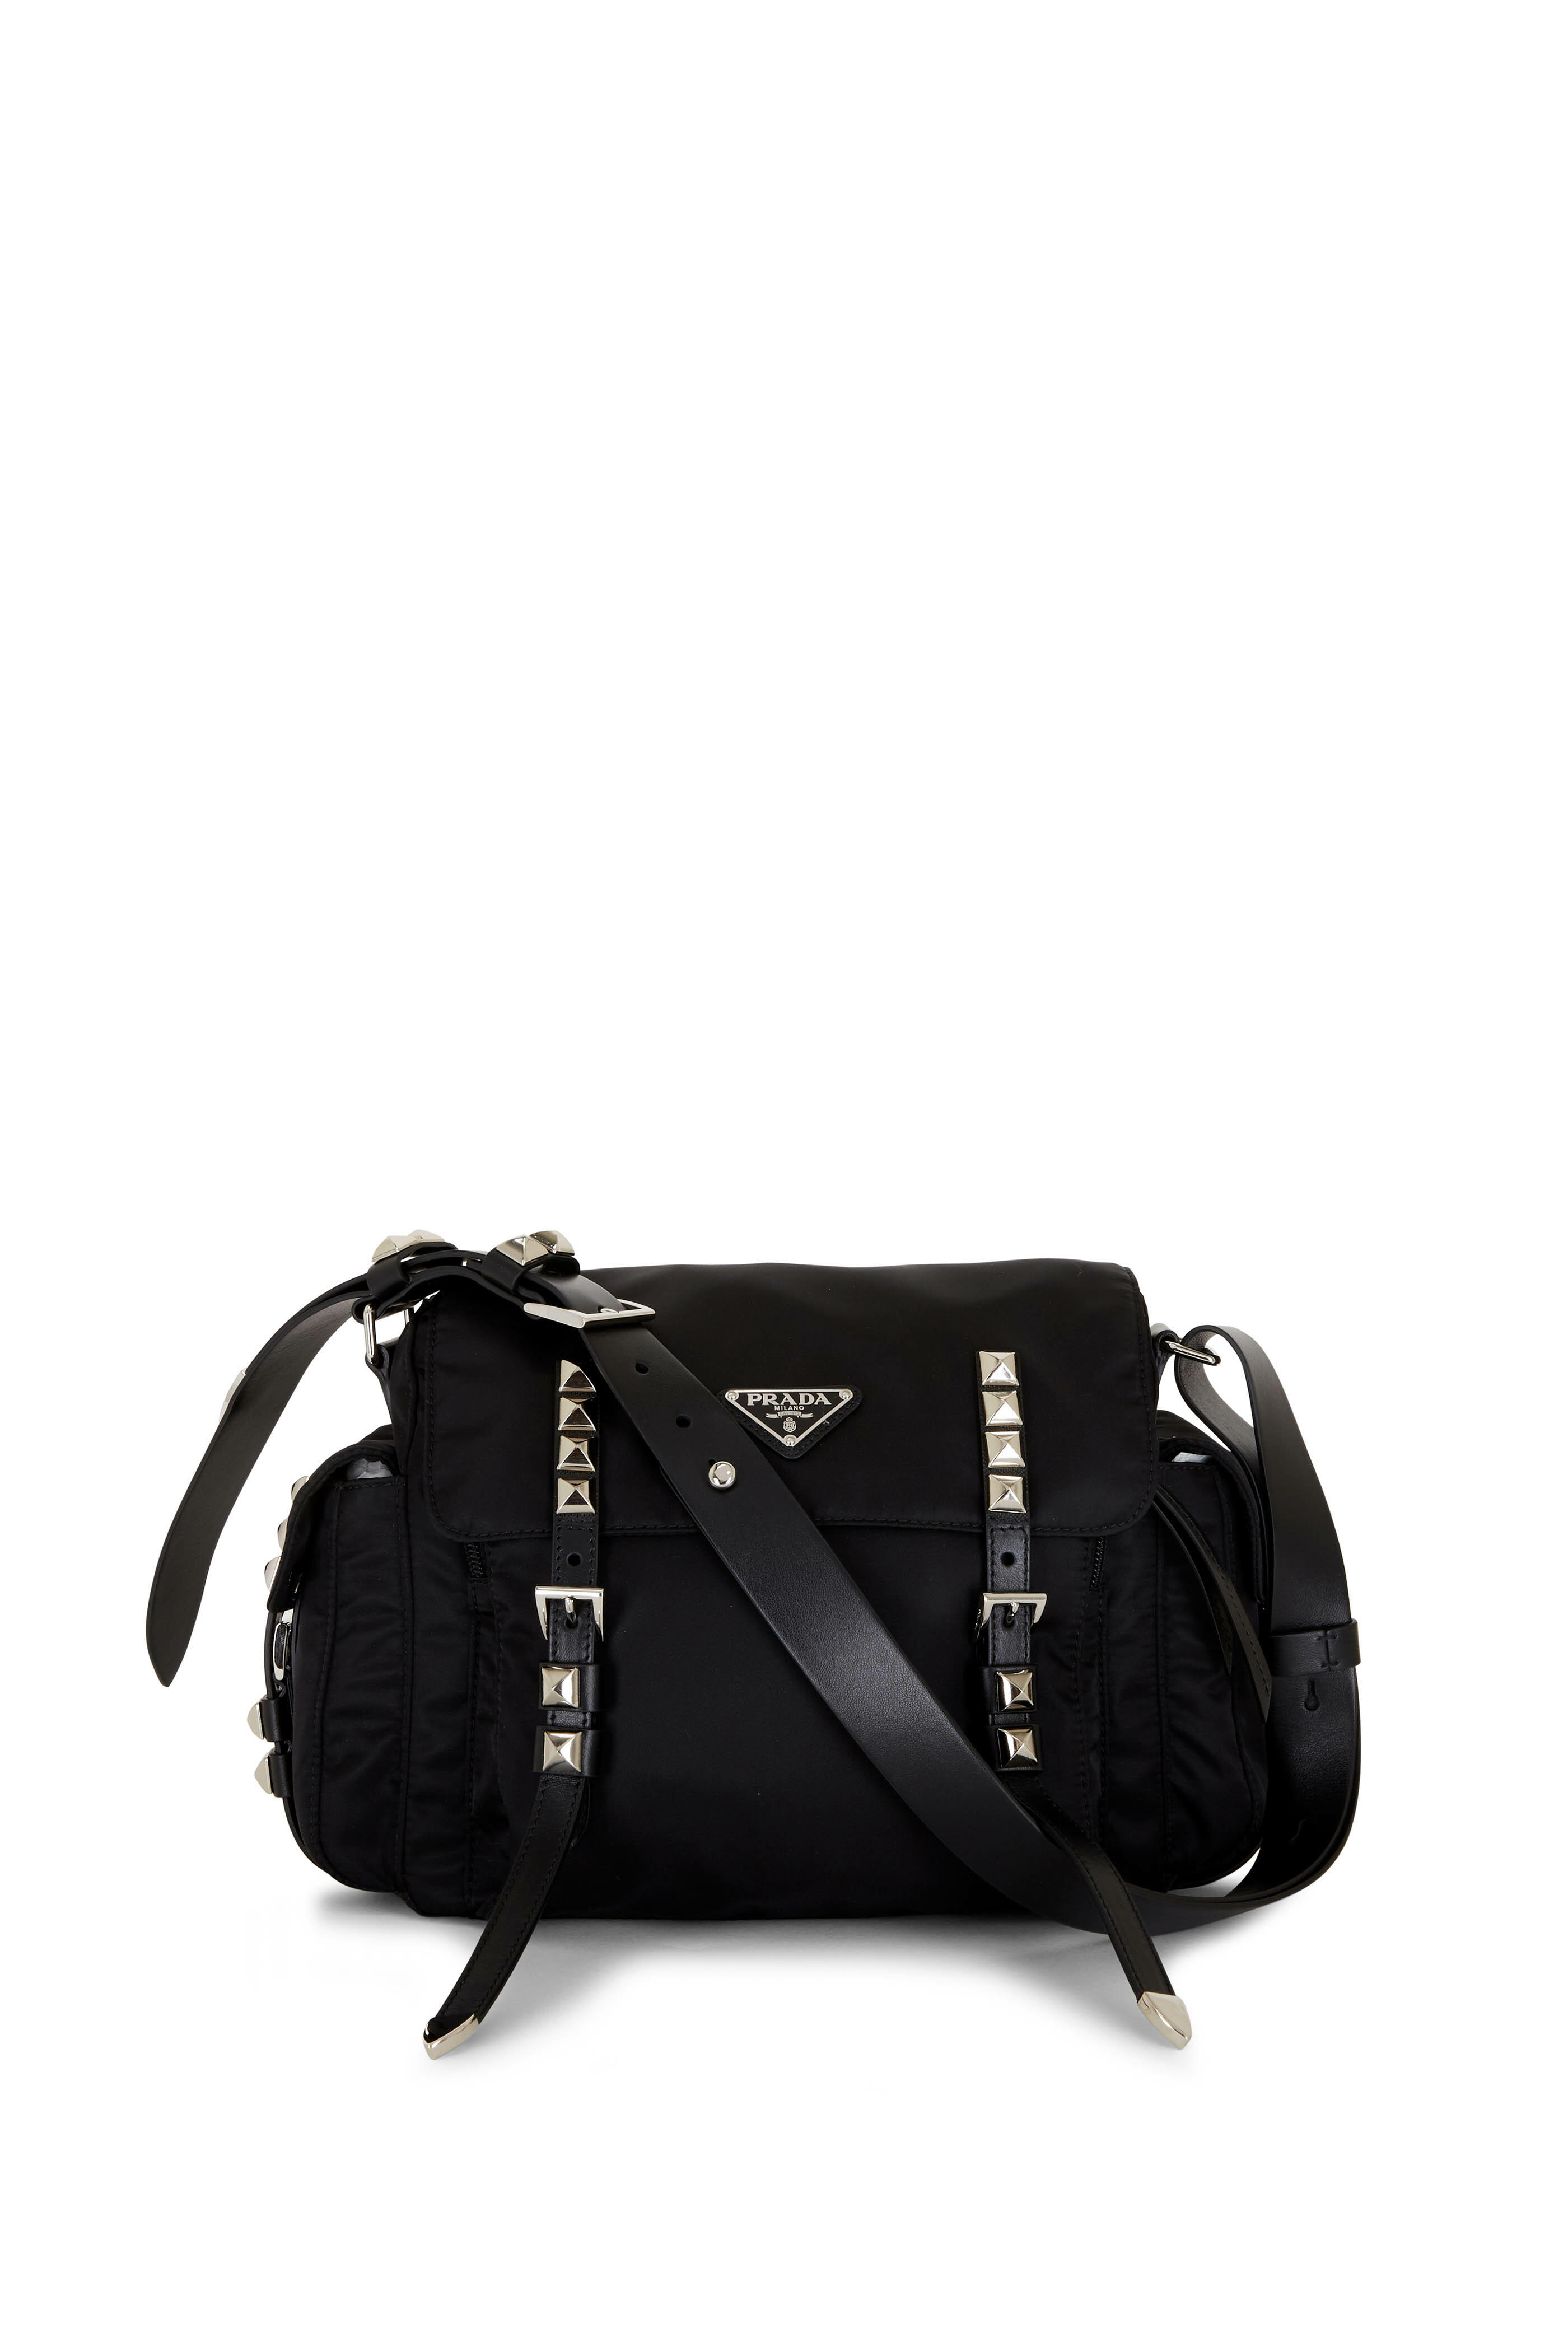 Prada - Black Nylon Stud-Embellished Shoulder Bag